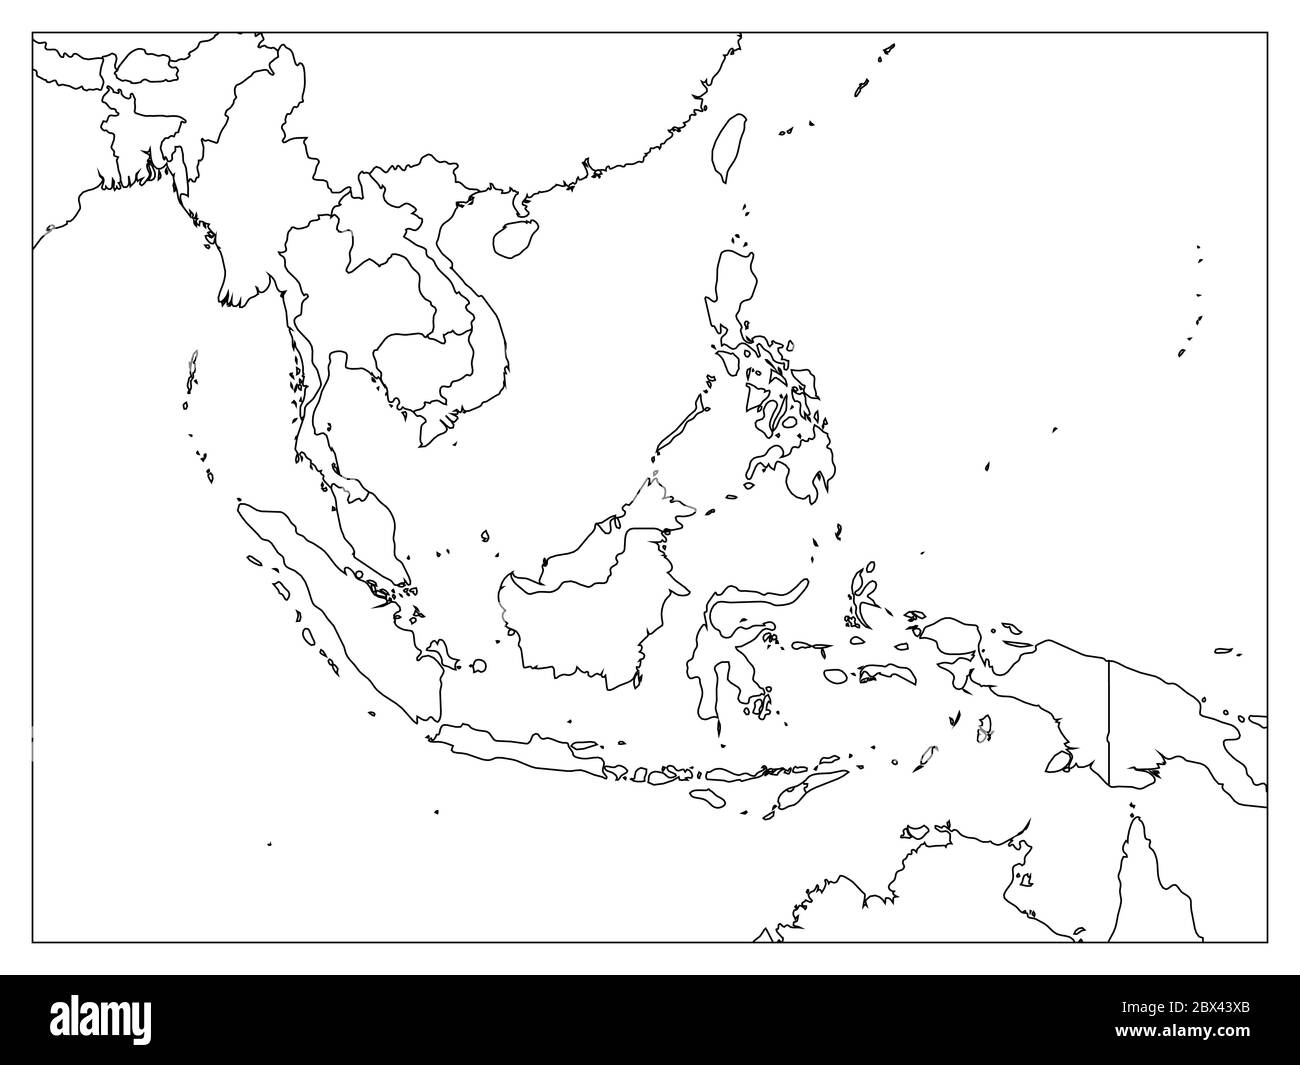 Mappa politica del Sud-Est asiatico. Contorno nero su sfondo bianco con etichette nere per il nome del paese. Semplice illustrazione vettoriale piatta. Illustrazione Vettoriale